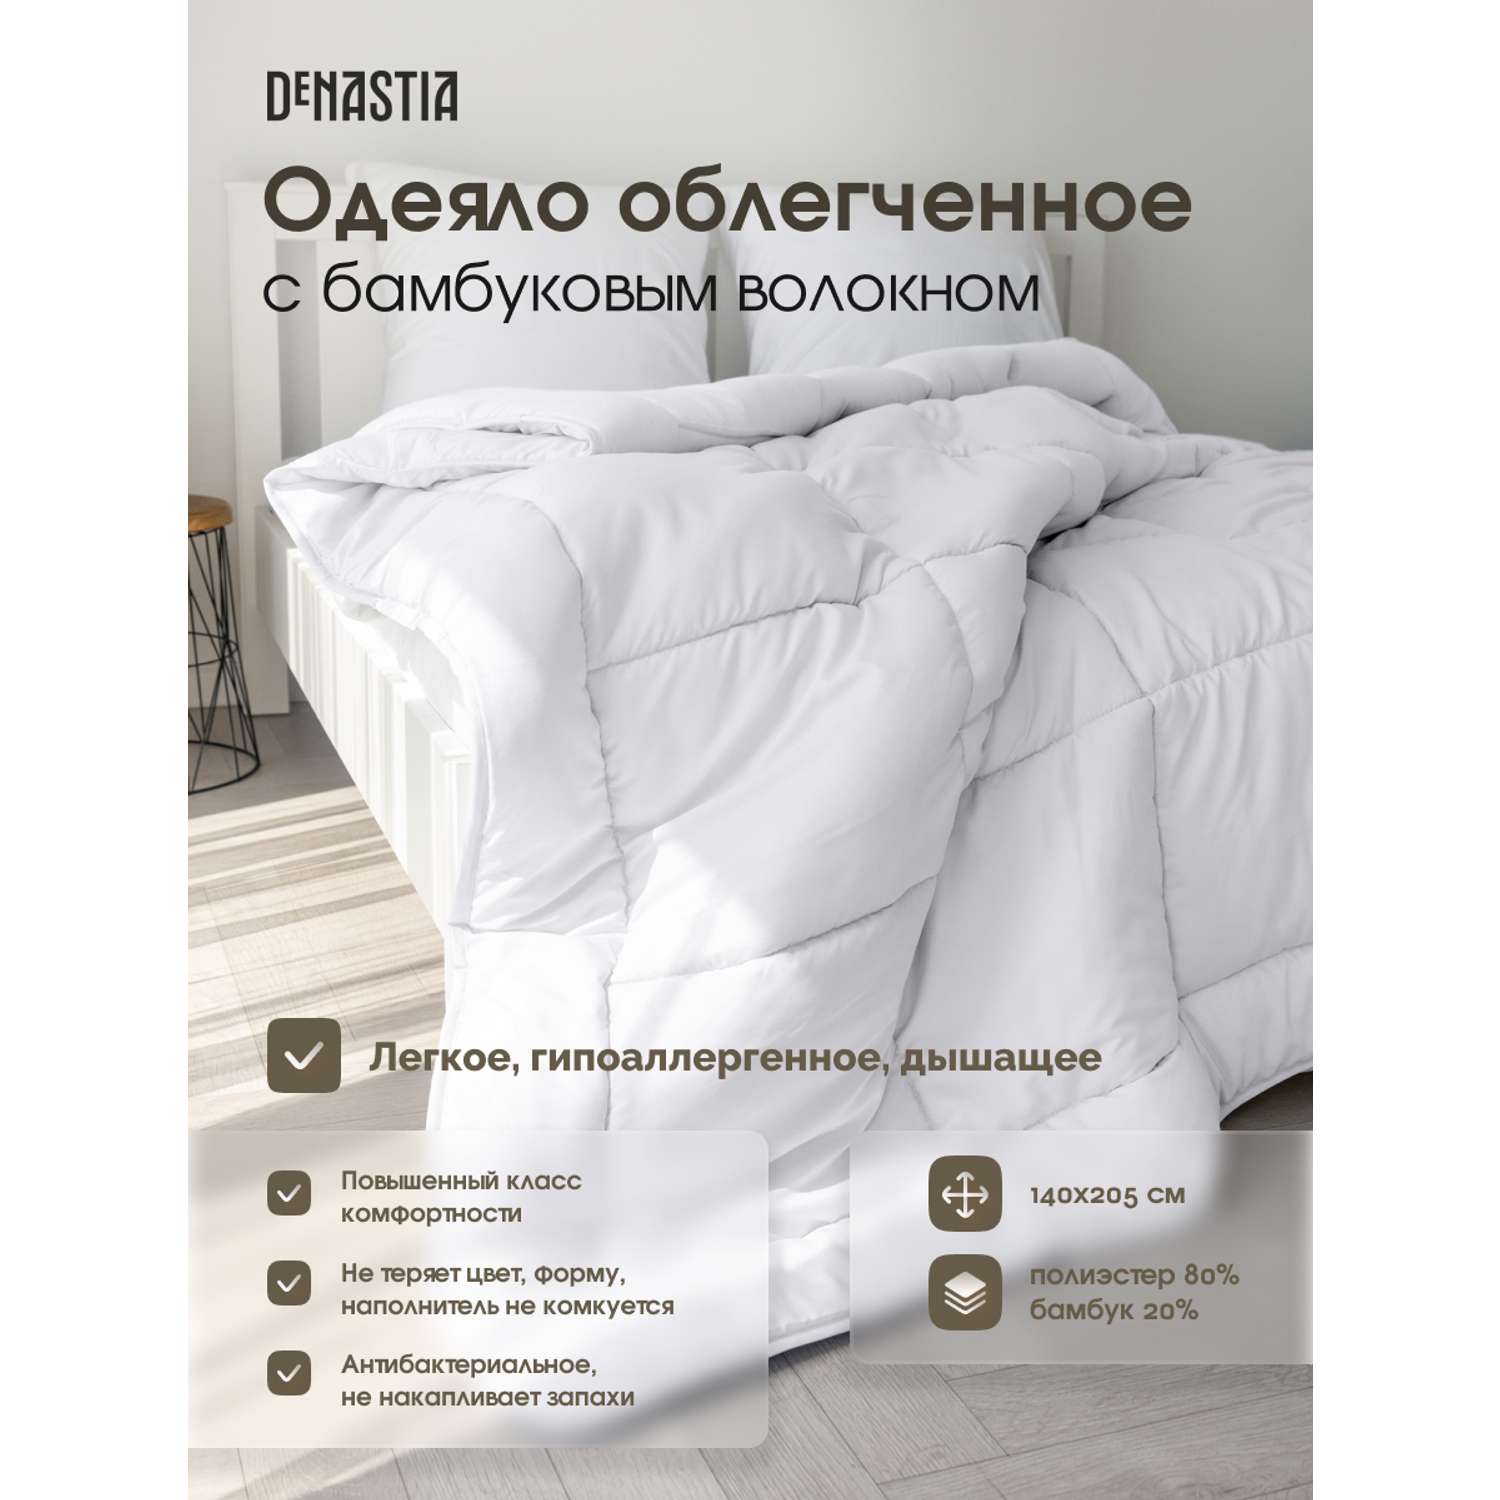 Одеяло облегченное DeNASTIA с бамбуковым волокном 140x205 см белый R020001 - фото 2